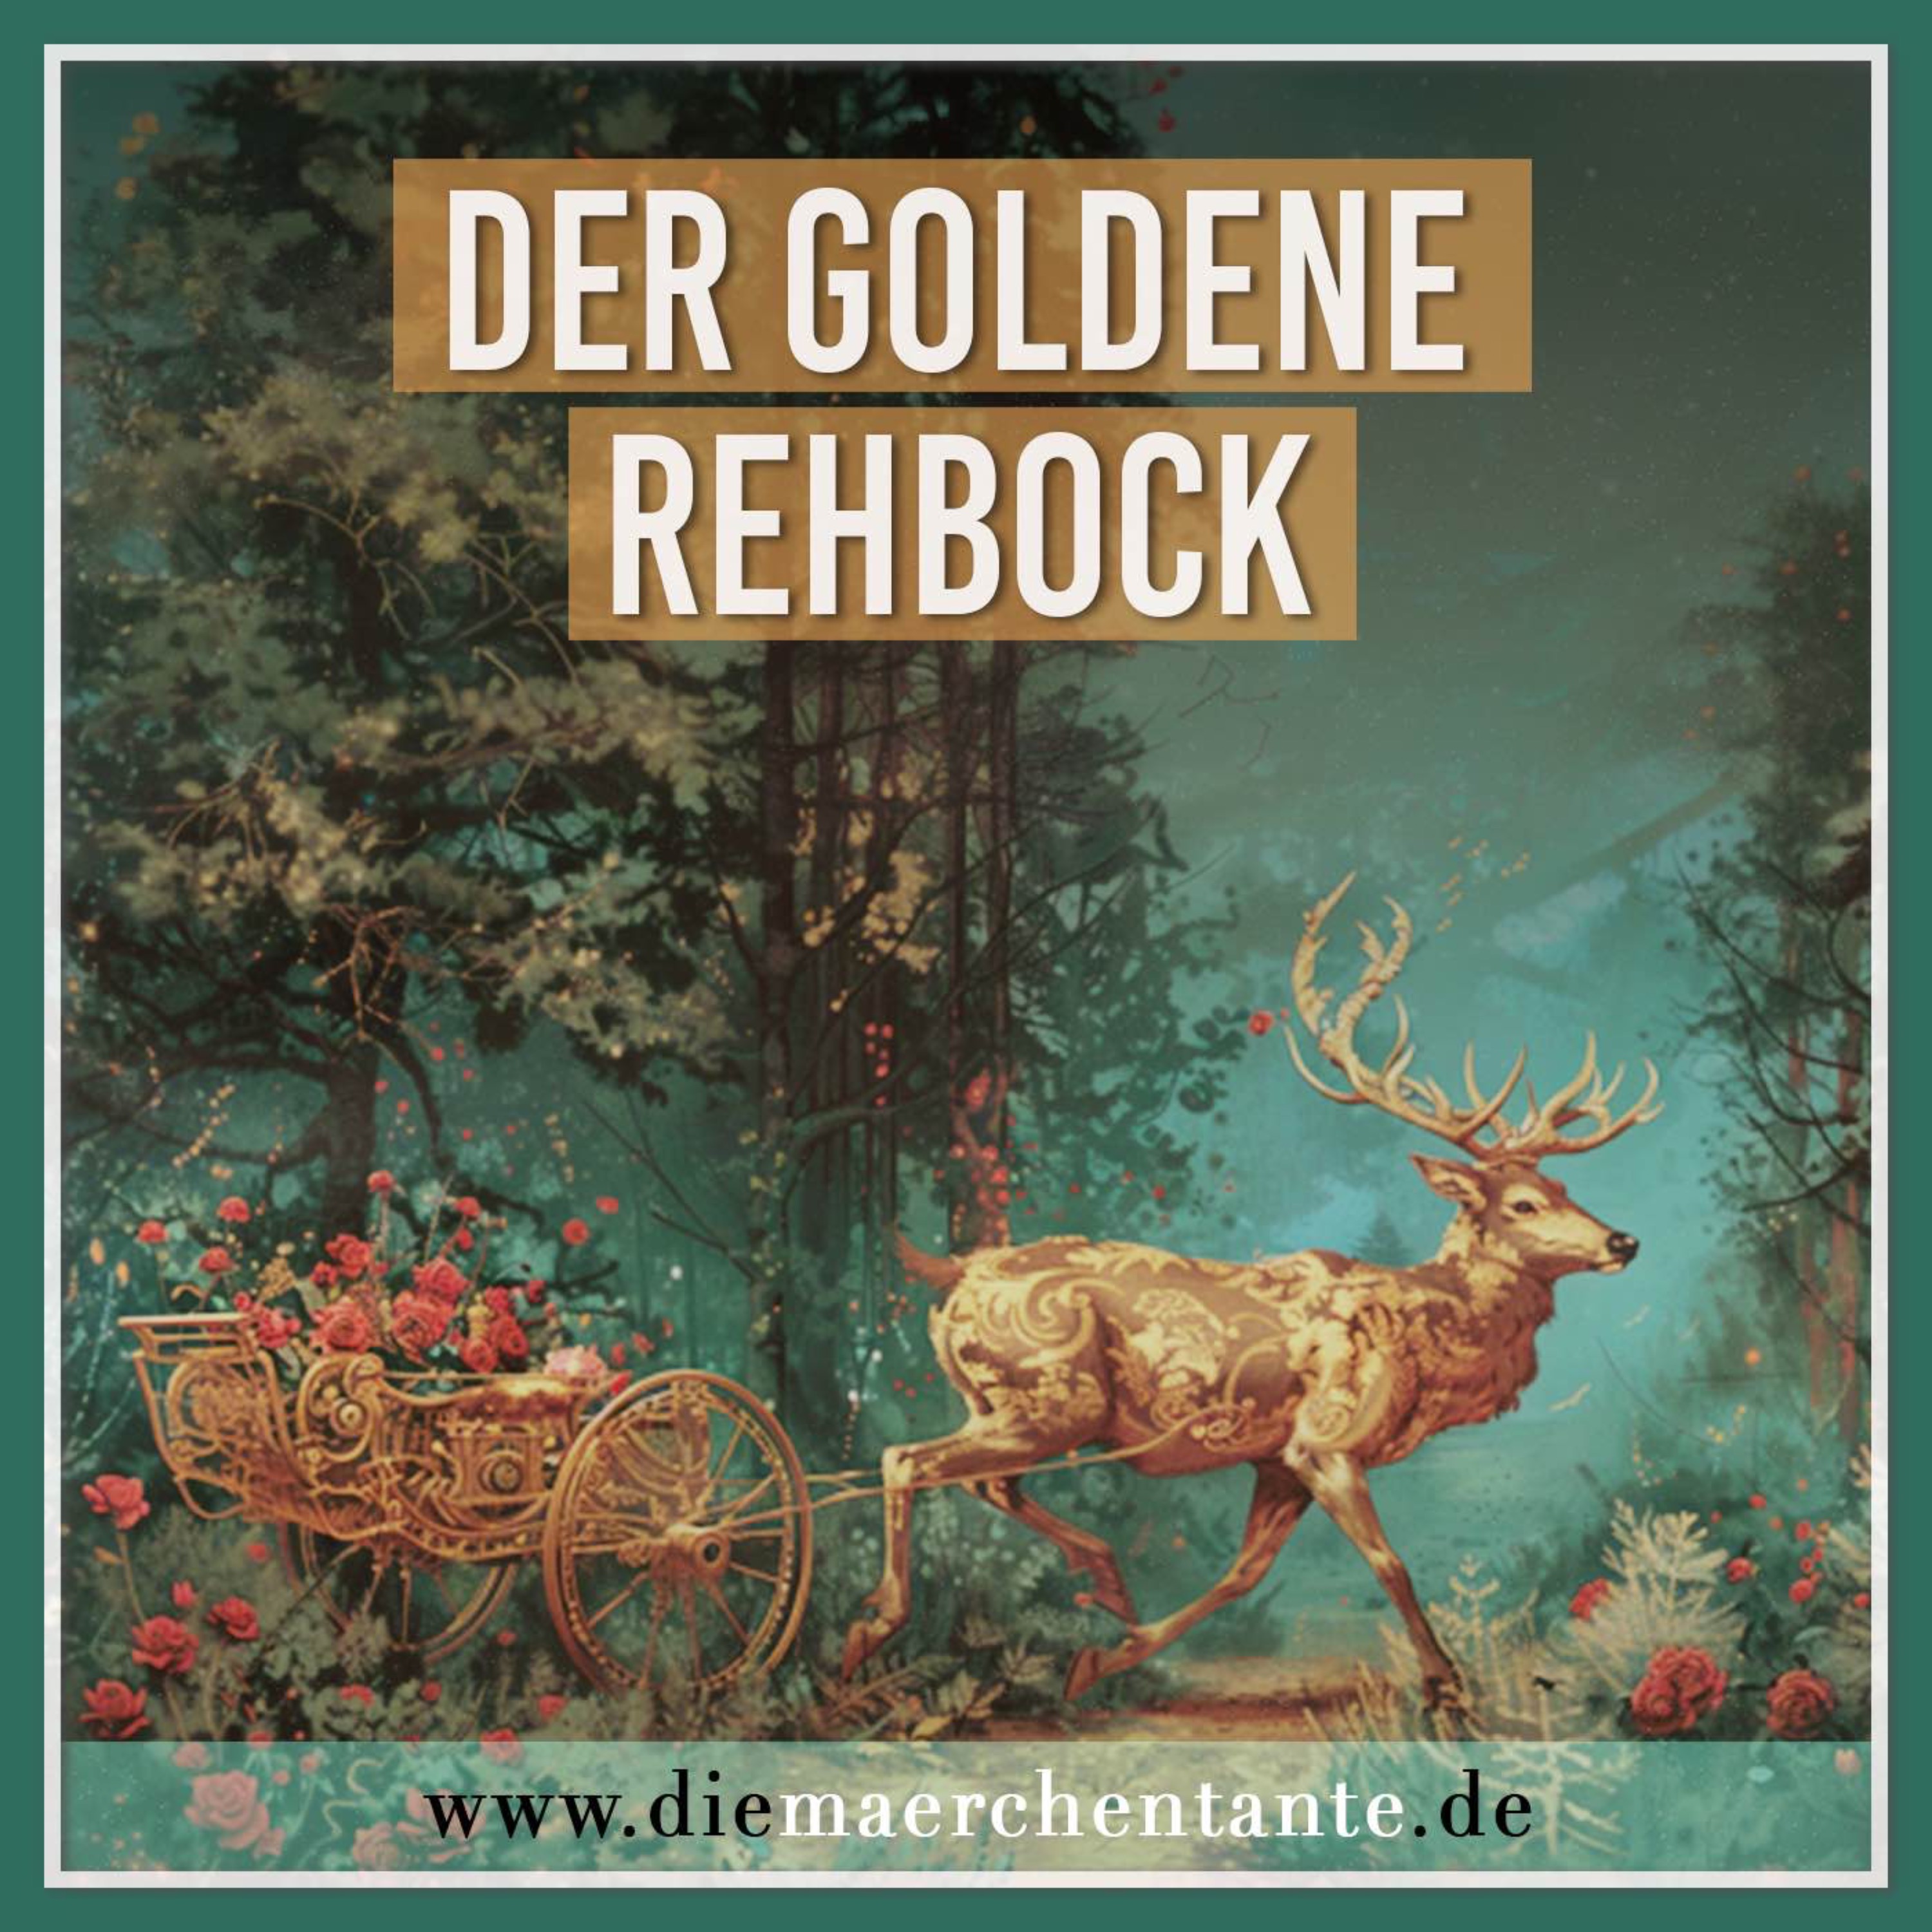 Der goldene Rehbock